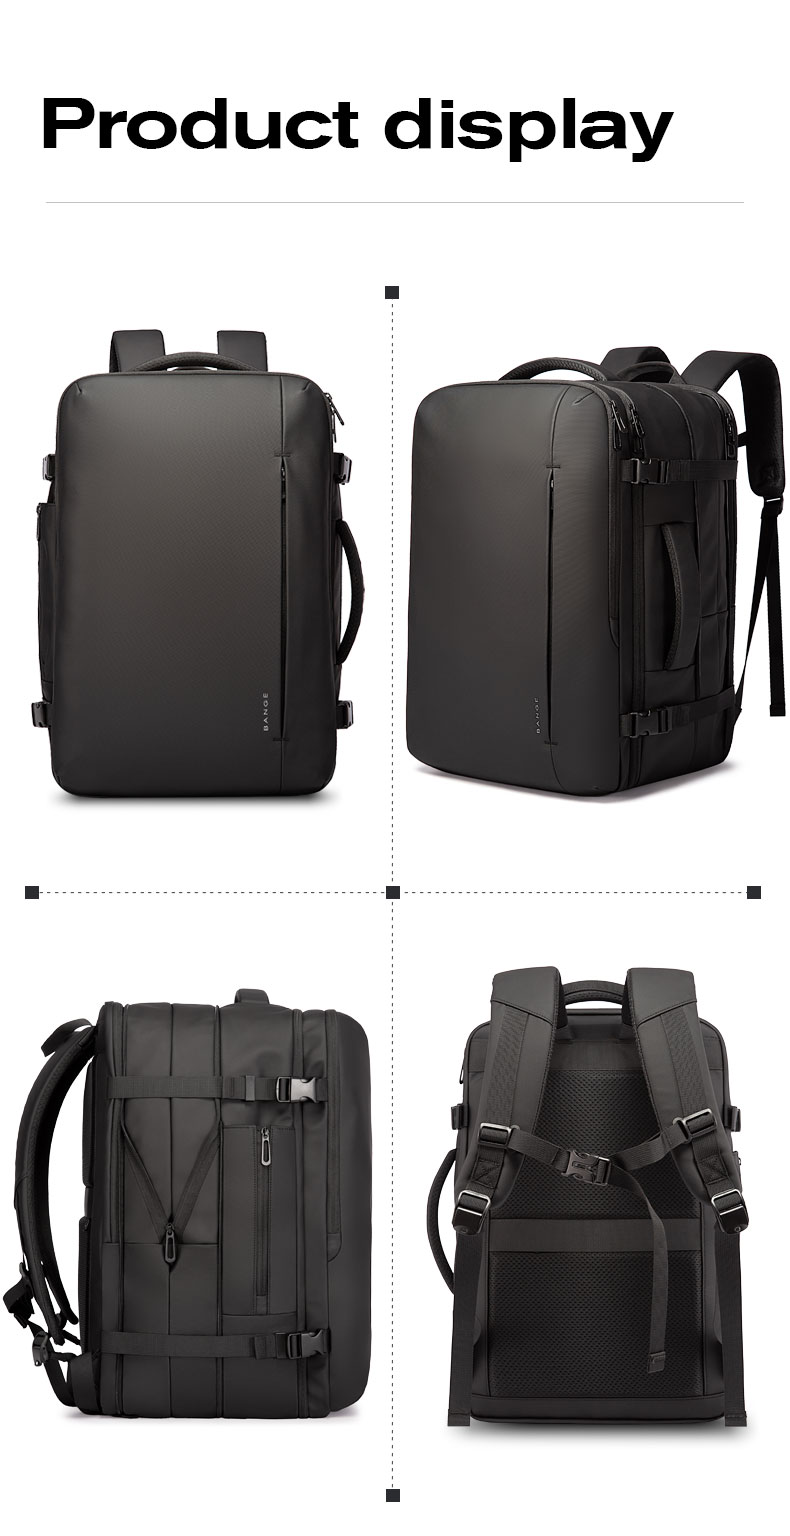 come4buy.com-Backpack Business Travel Bag Black